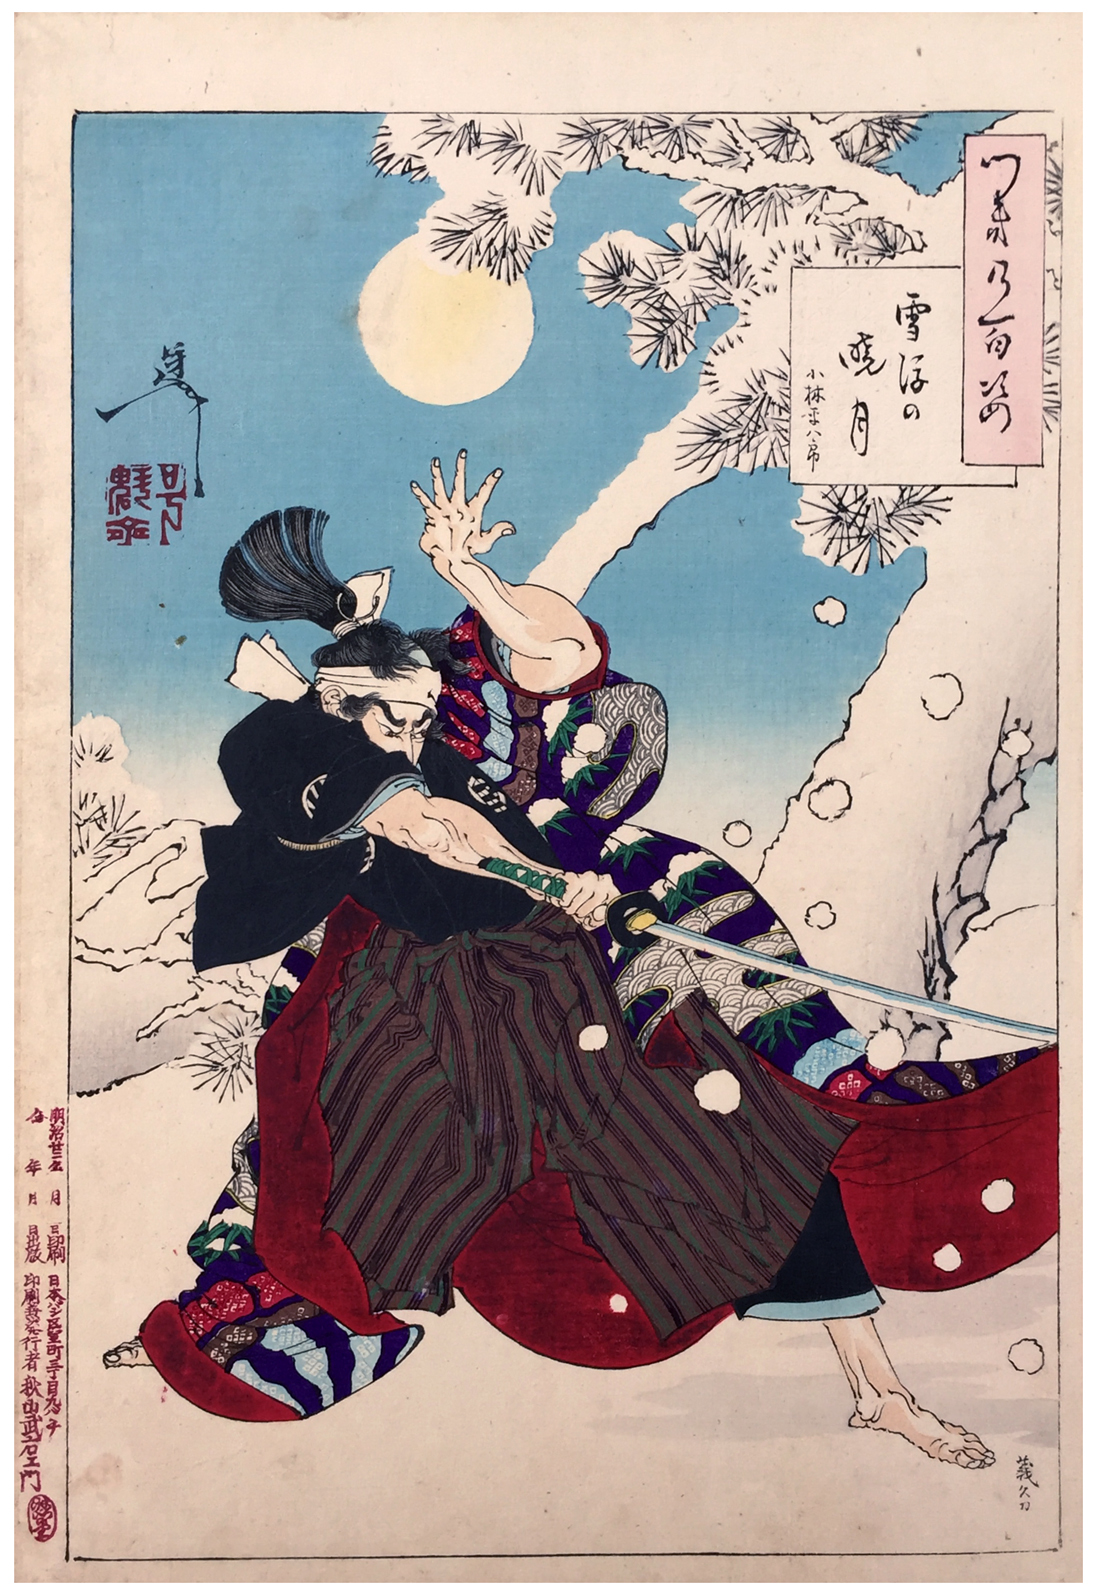 黎明的月和飘落的雪 by  月冈芳年 - 1889 